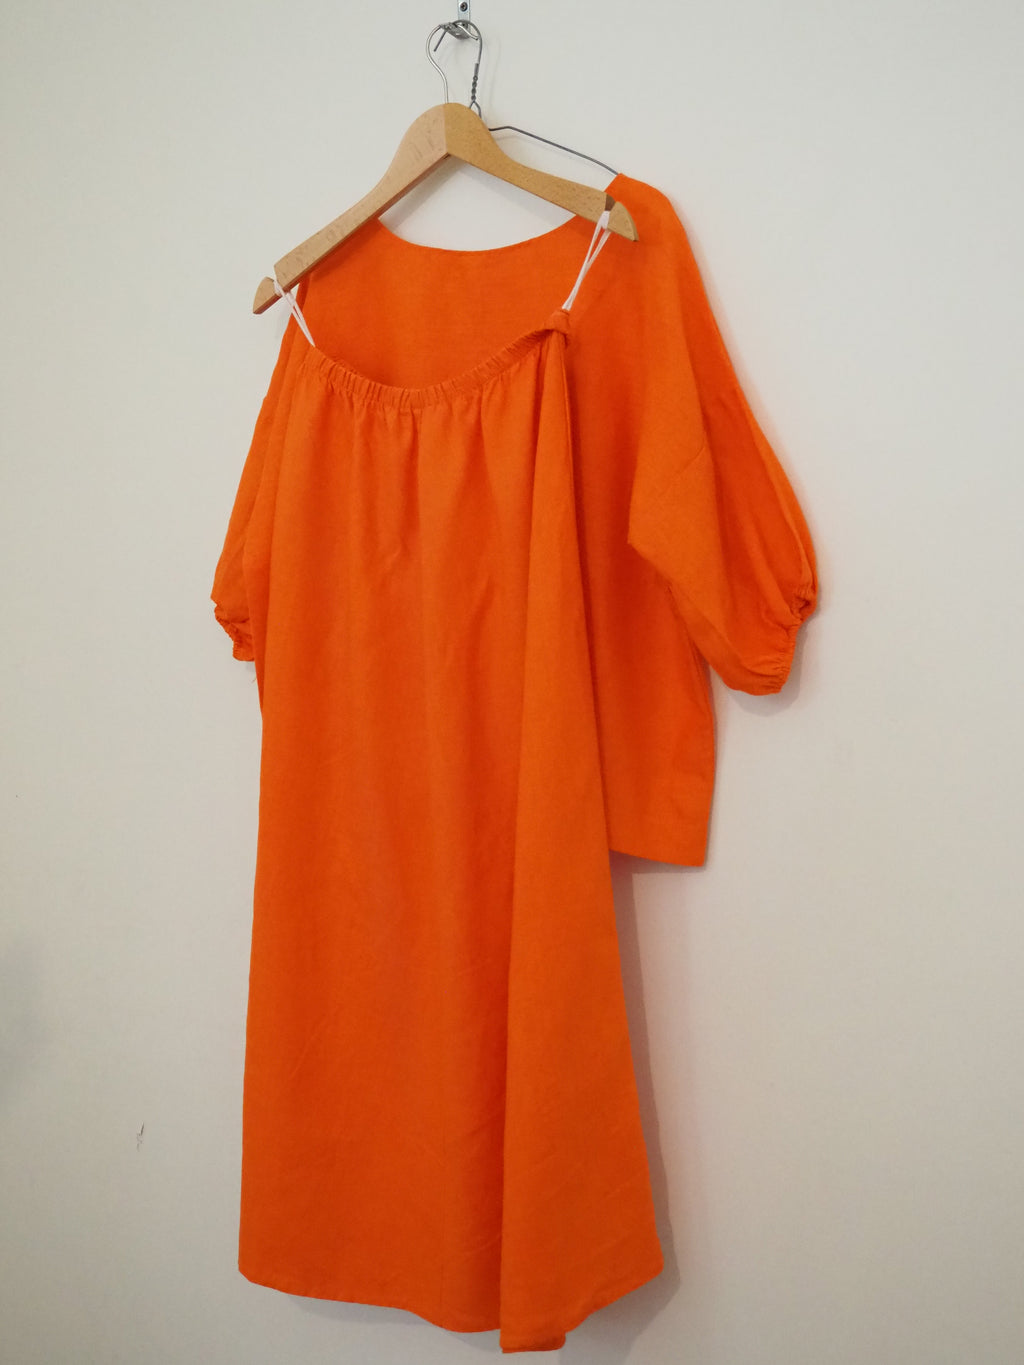 Sunday skirt - Oranje